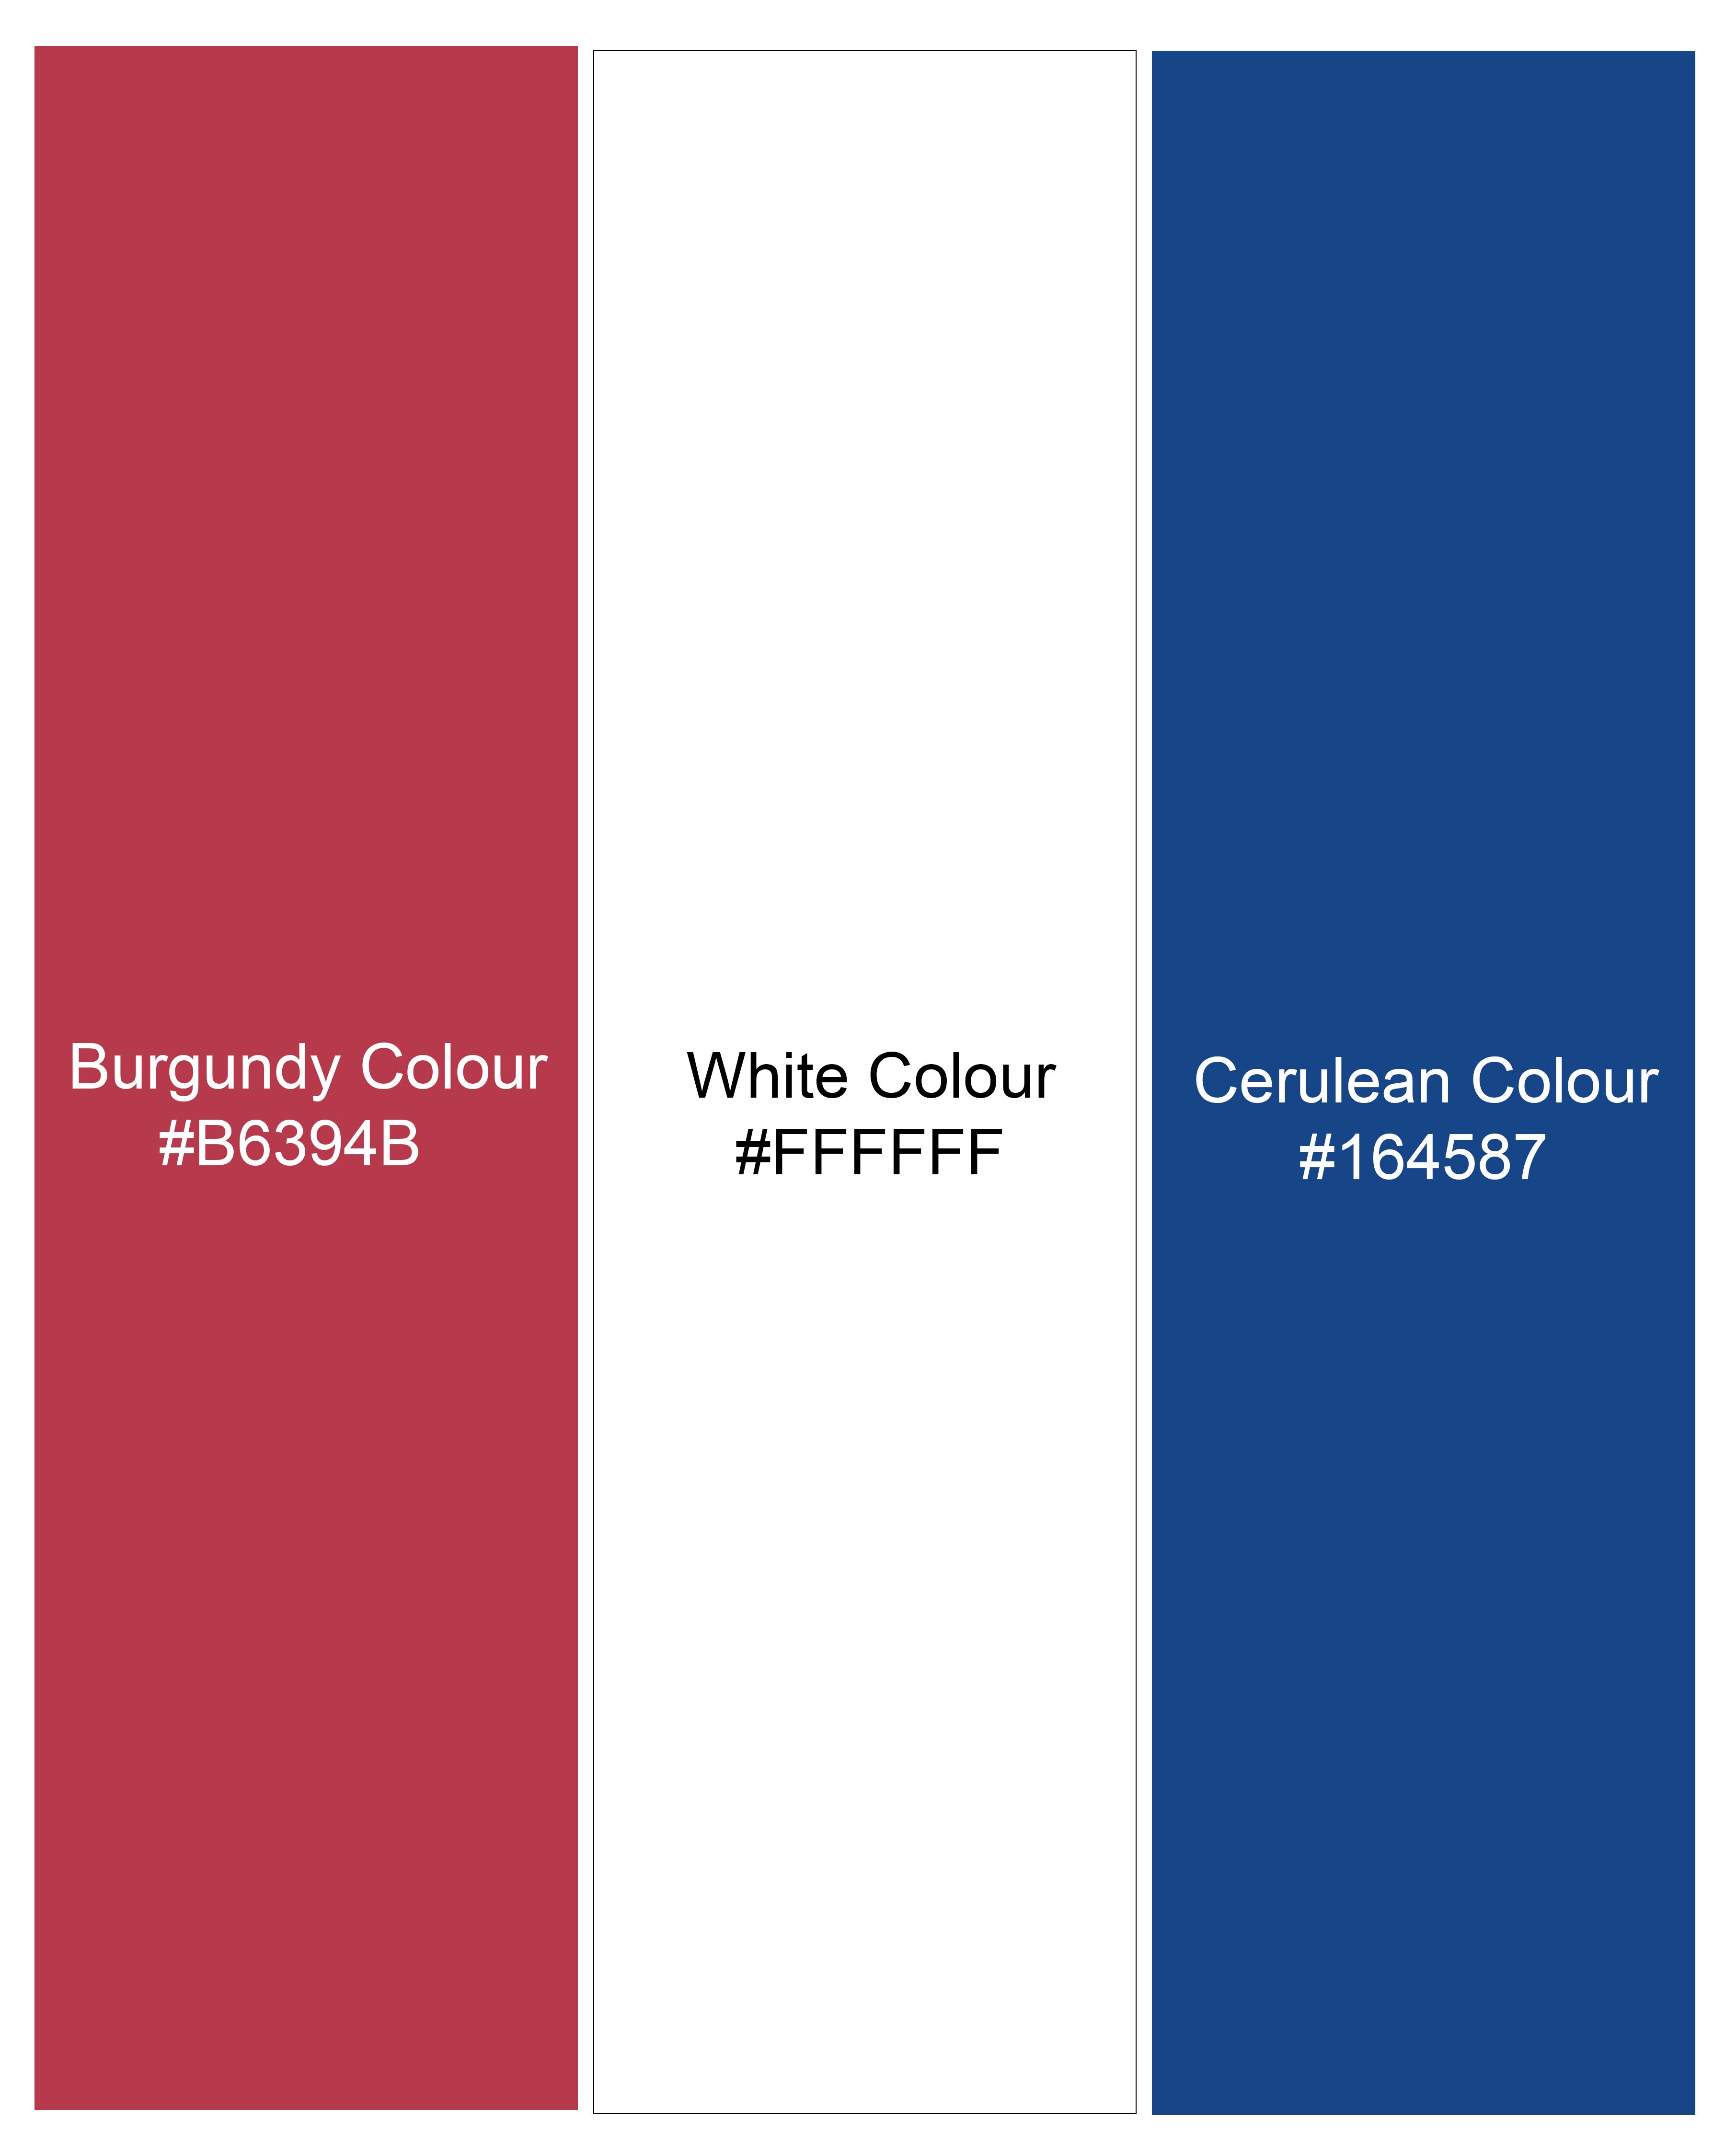 Burgundy With Bright White and Cerulean Blue Windowpane Premium Cotton Shirt 8409-CA-38, 8409-CA-H-38, 8409-CA-39,8409-CA-H-39, 8409-CA-40, 8409-CA-H-40, 8409-CA-42, 8409-CA-H-42, 8409-CA-44, 8409-CA-H-44, 8409-CA-46, 8409-CA-H-46, 8409-CA-48, 8409-CA-H-48, 8409-CA-50, 8409-CA-H-50, 8409-CA-52, 8409-CA-H-52